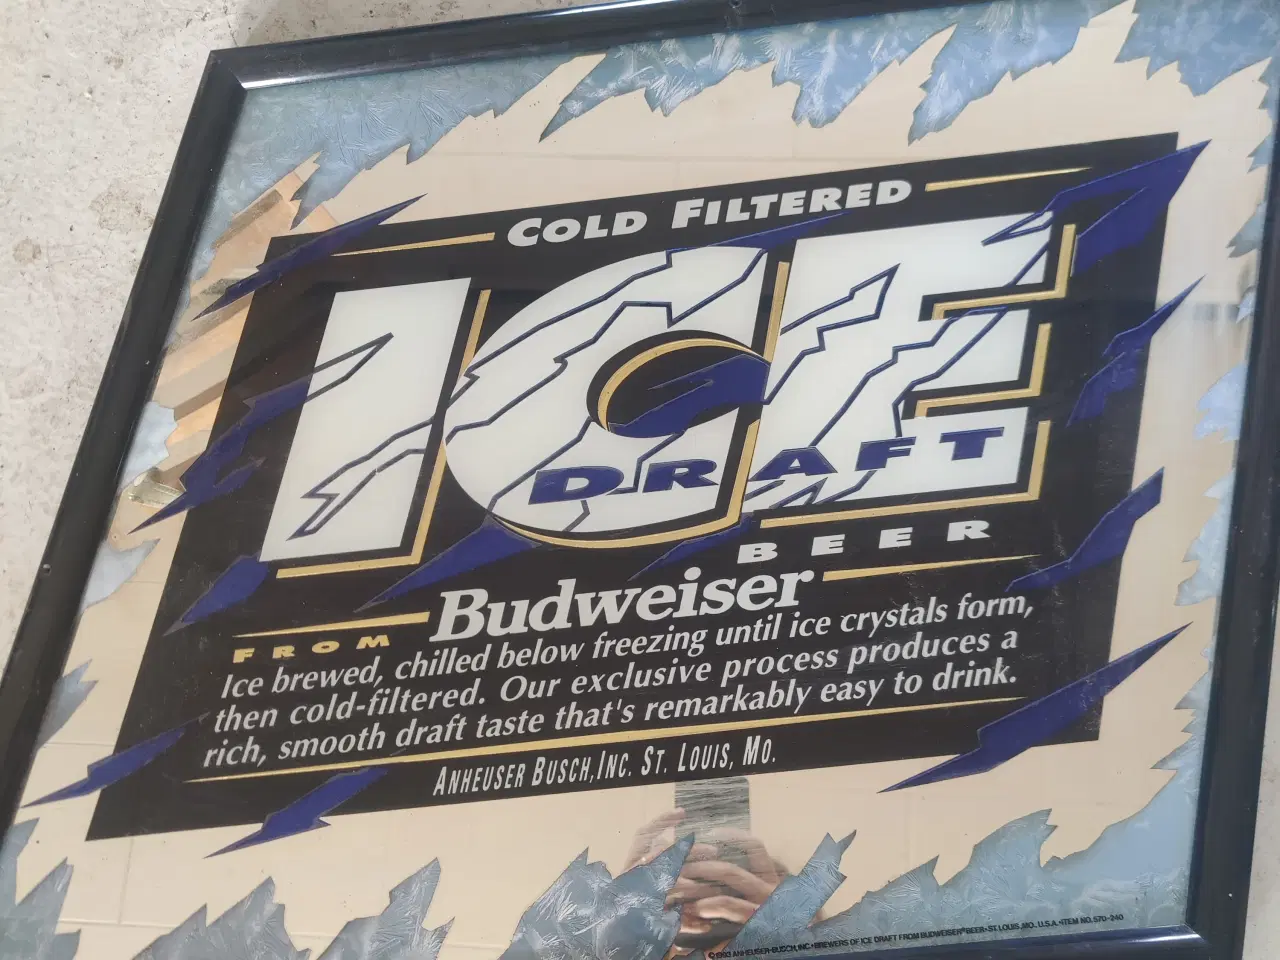 Billede 1 - Ice draft beer Budweiser billede/spejl 